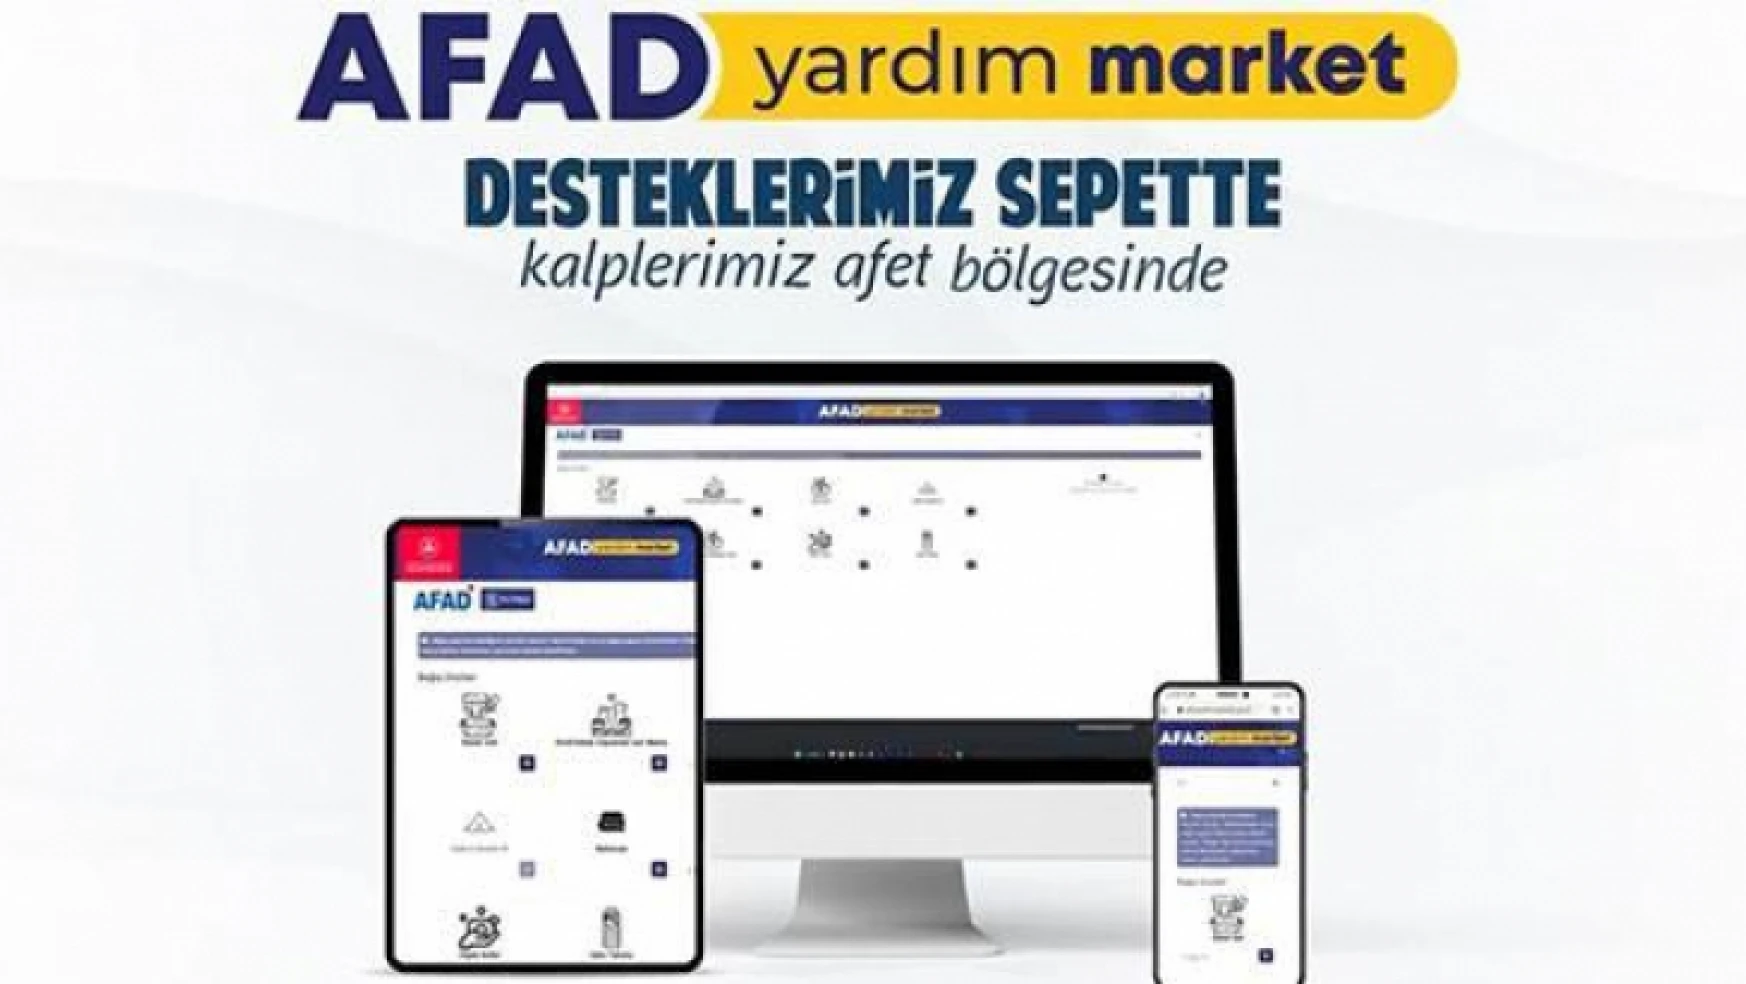 'AFAD Yardım Market' hayata geçirildi